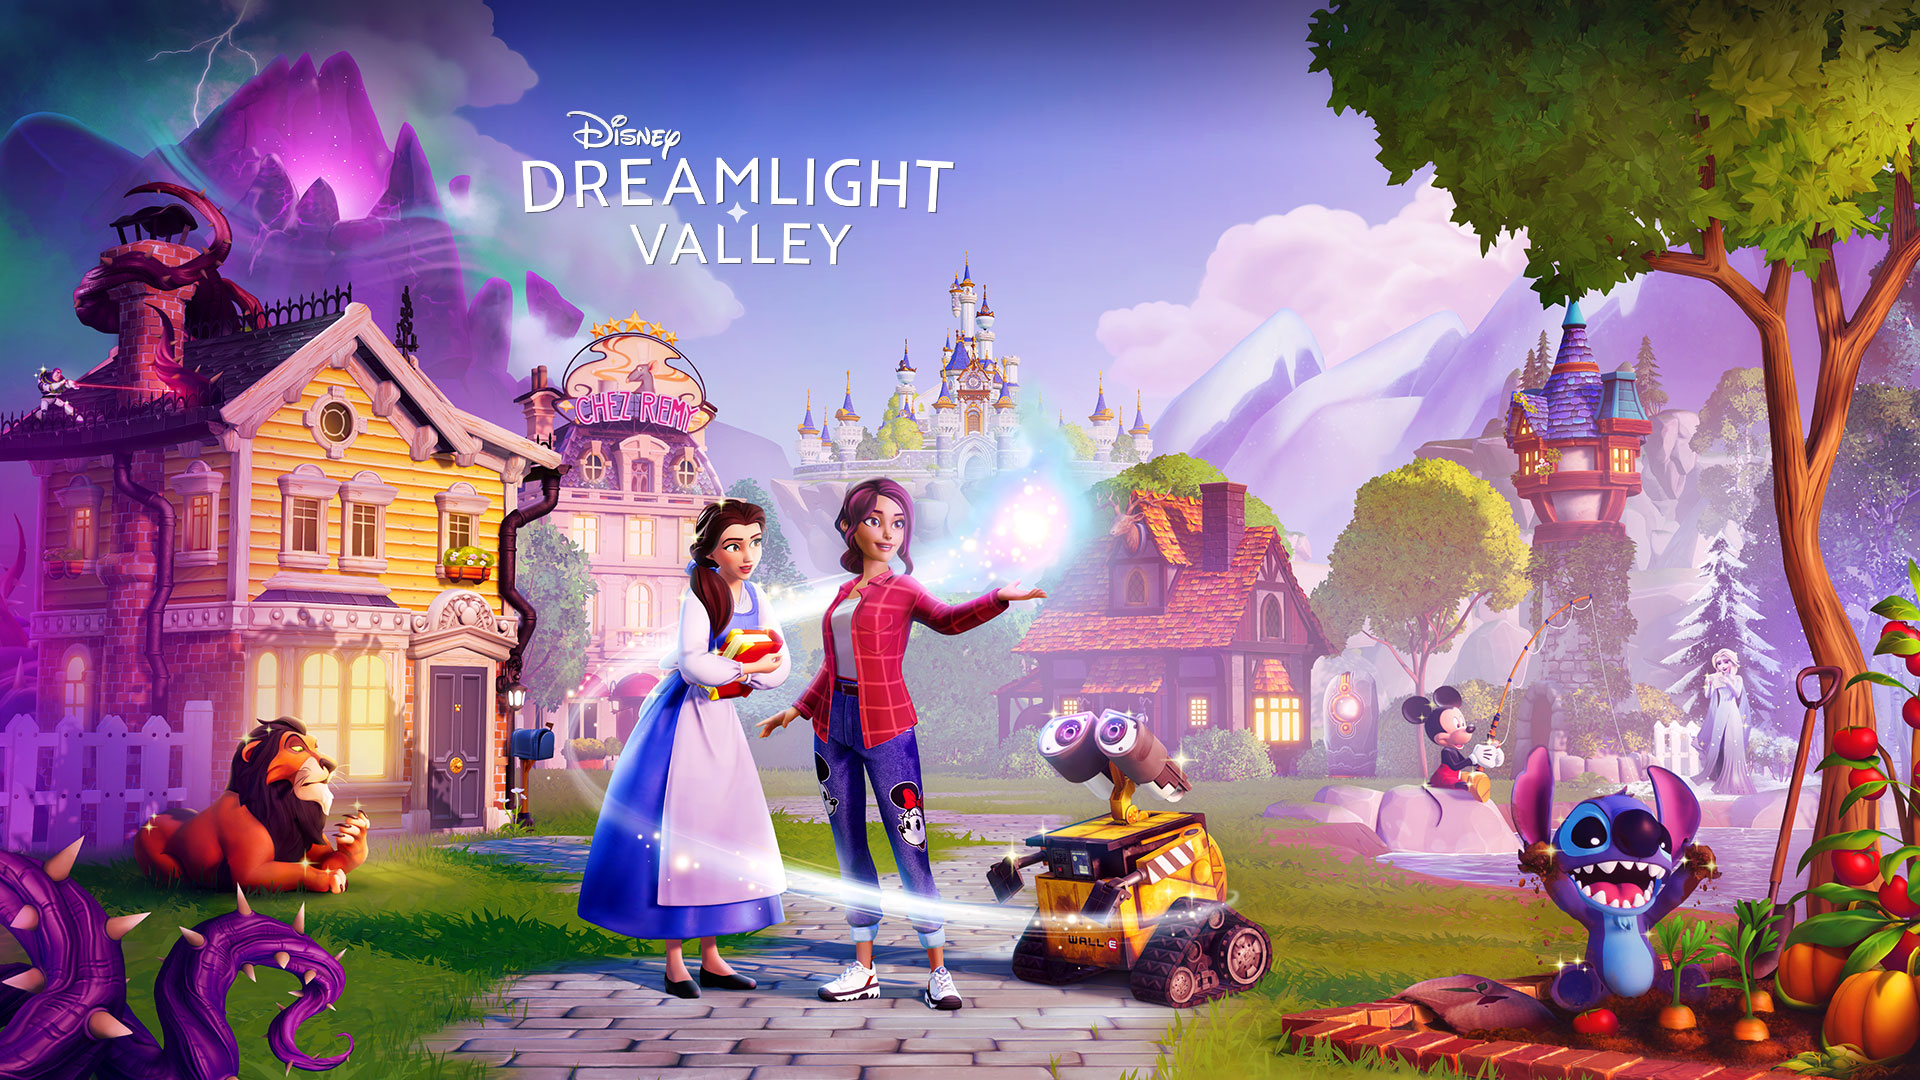 Disney Dreamlight Valley, Disney-karakterer som Belle og Wall-E samles rundt en spiller i en eiendommelig by. 